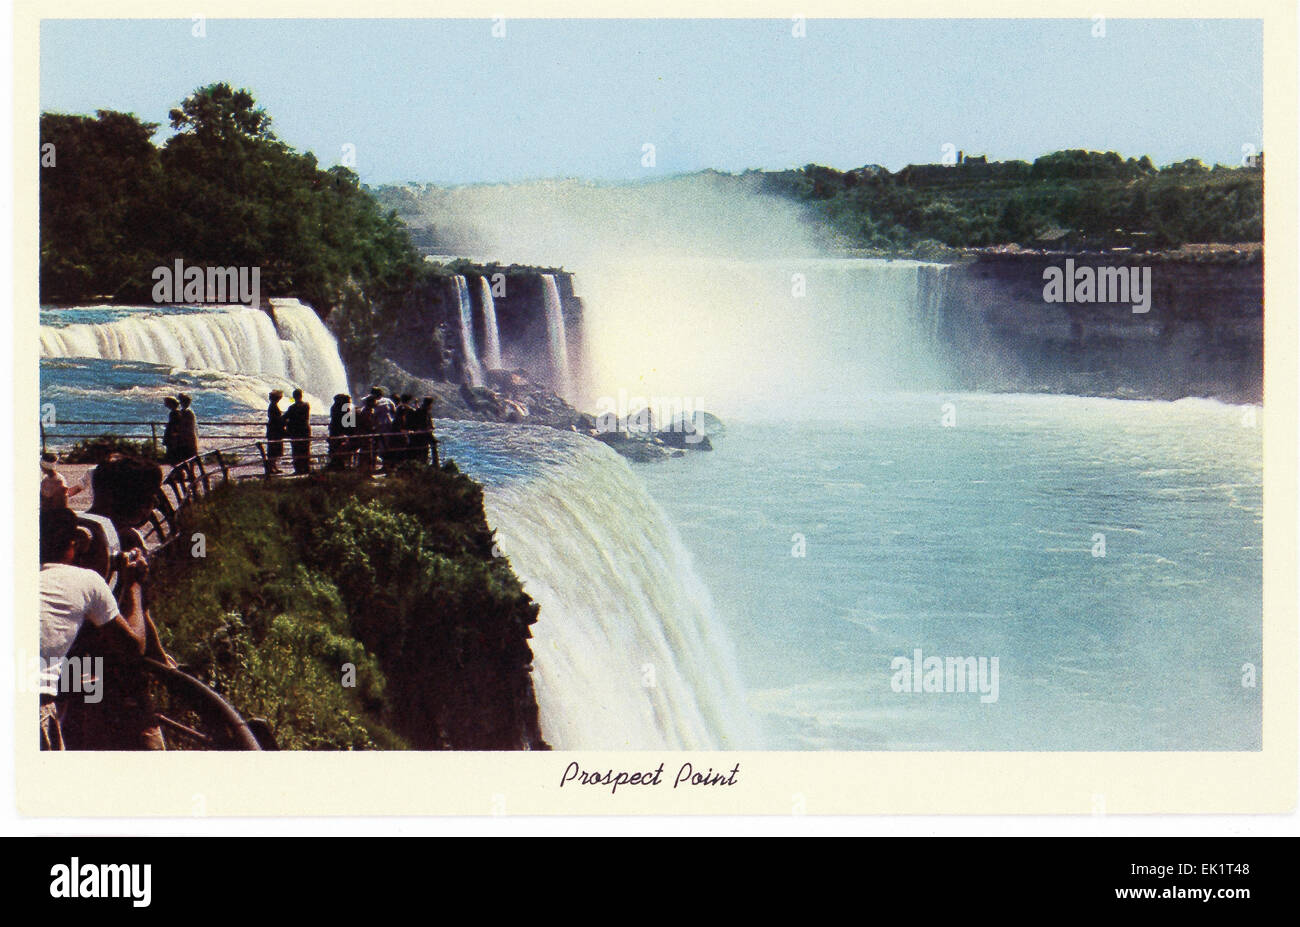 L'illustrazione in questo inizio del 1930 spese postali mostra prospettiva punto alle Cascate del Niagara in Upstate New York. Foto Stock